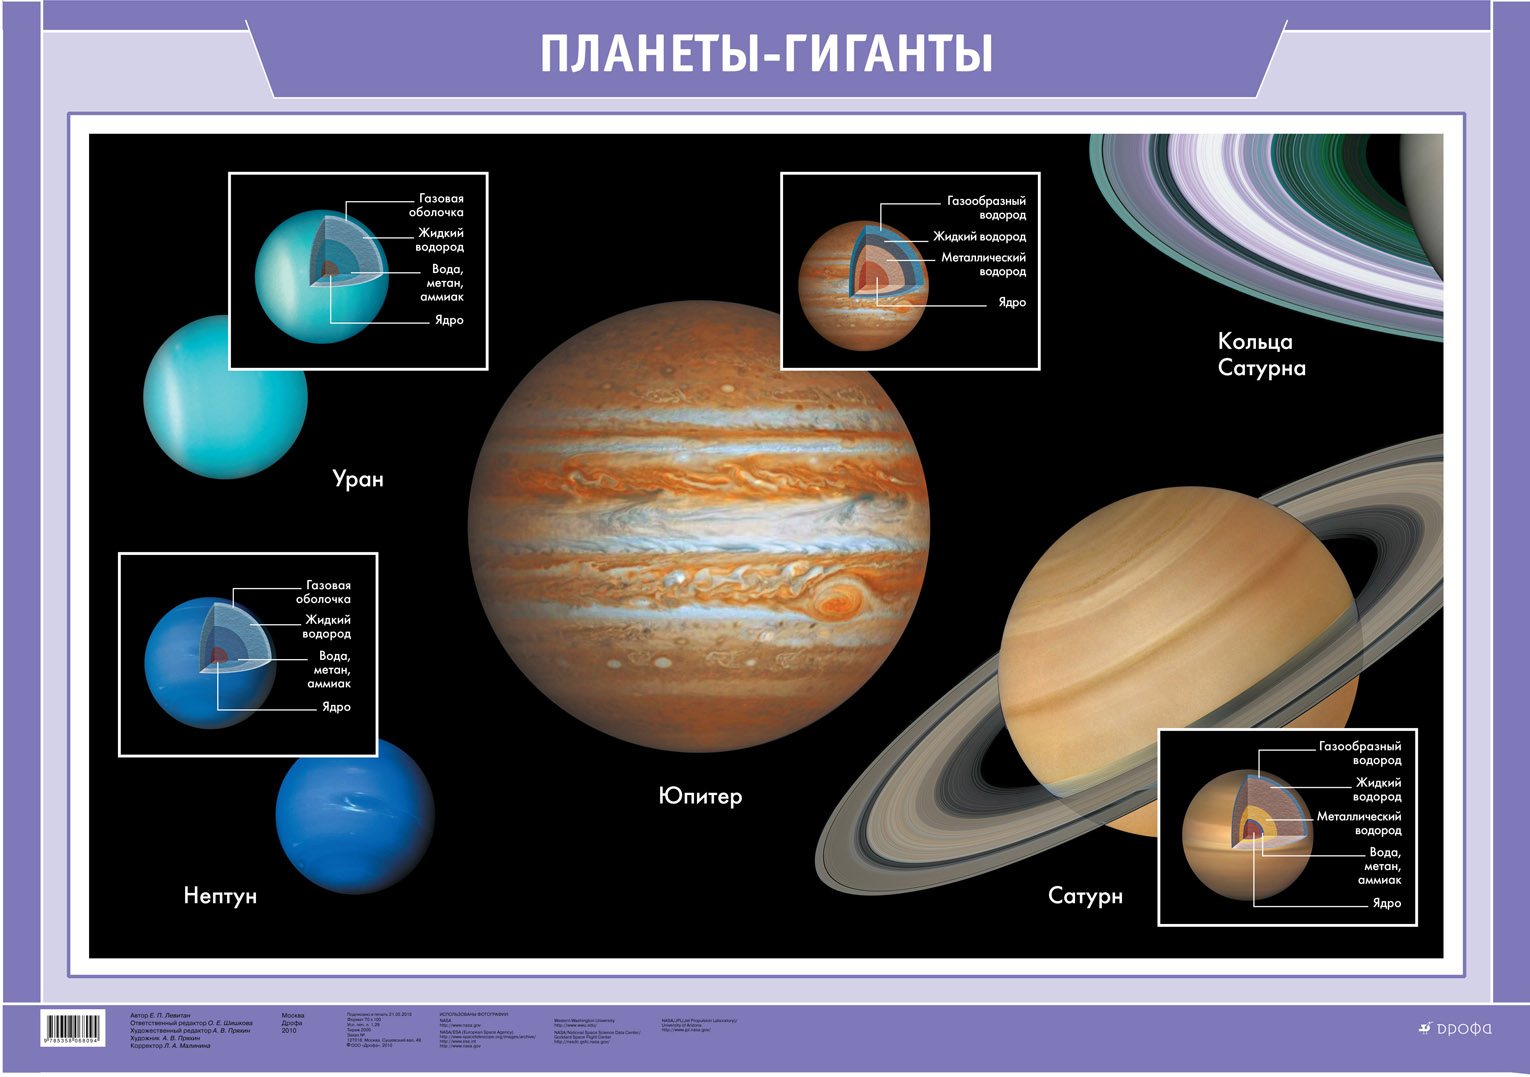 Какие размеры имеет солнечная система. Планеты гиганты. Спутники и кольца планет гигантов. Планеты гиганты имеют. Планеты гиганты солнечной системы.